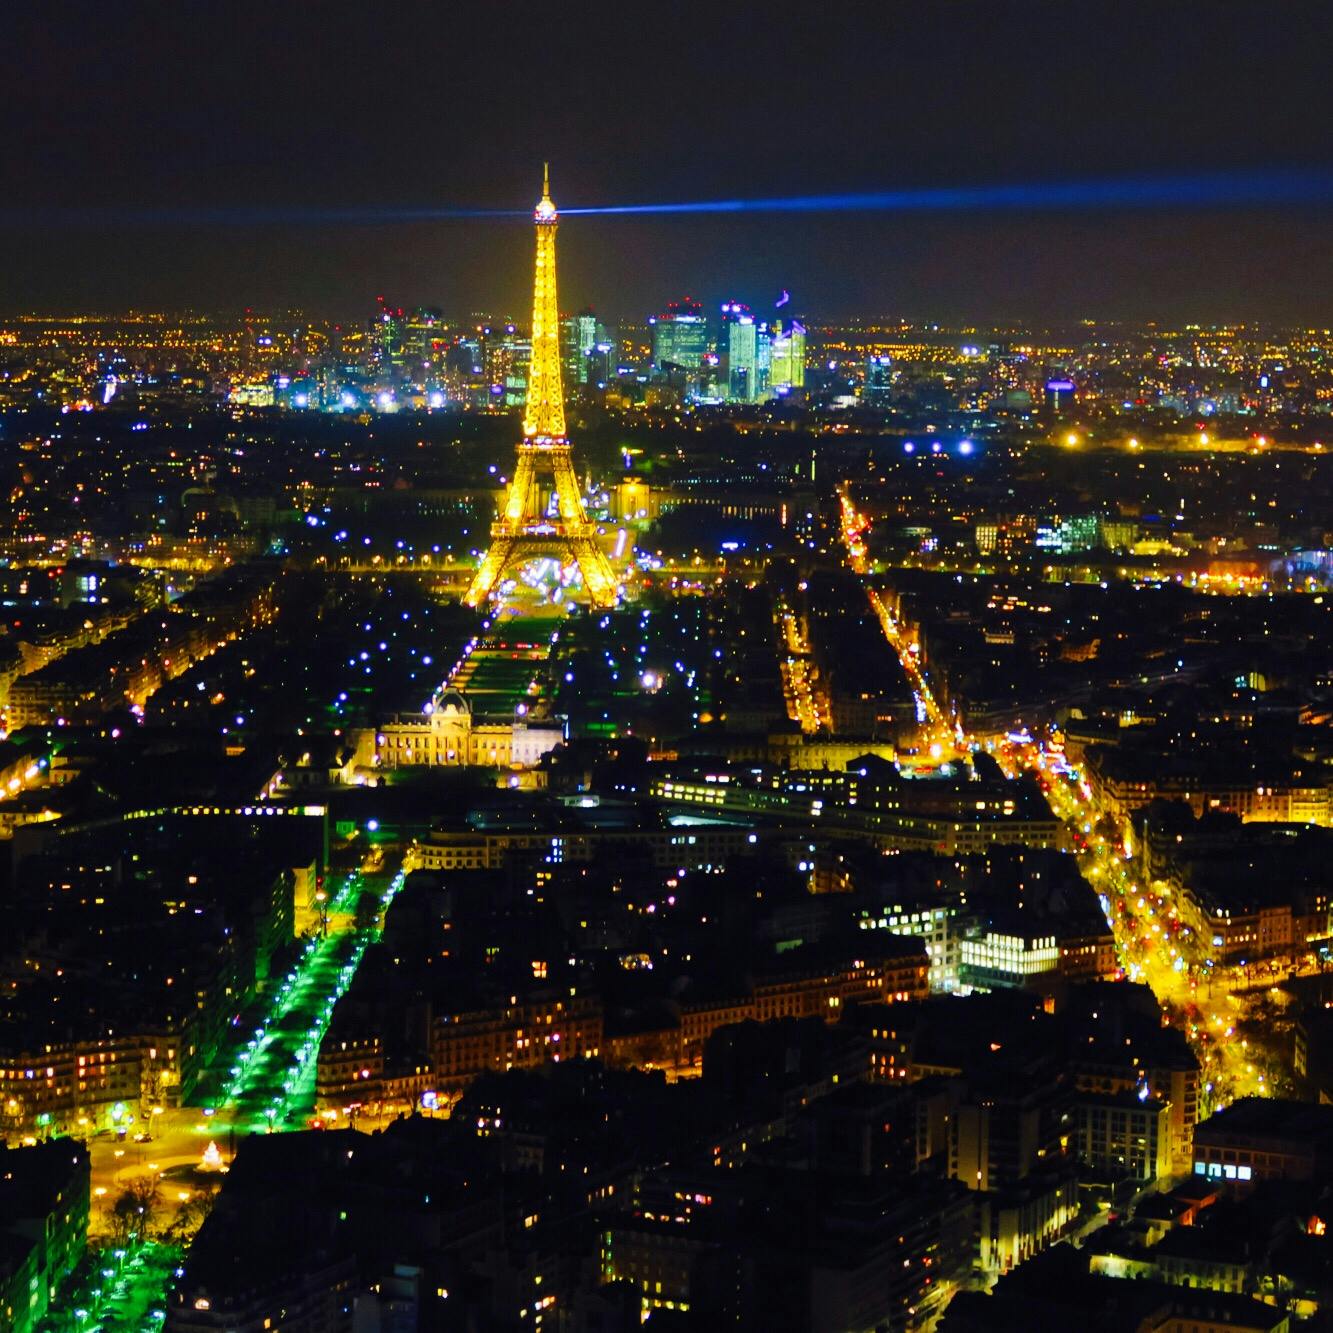 モンパルナスタワー トゥール モンパルナス Maine Montparnasse Tower の投稿写真 感想 みどころ パリの夜景はエッフェル塔から見るよりモンパルナスタワーがおす トリップノート